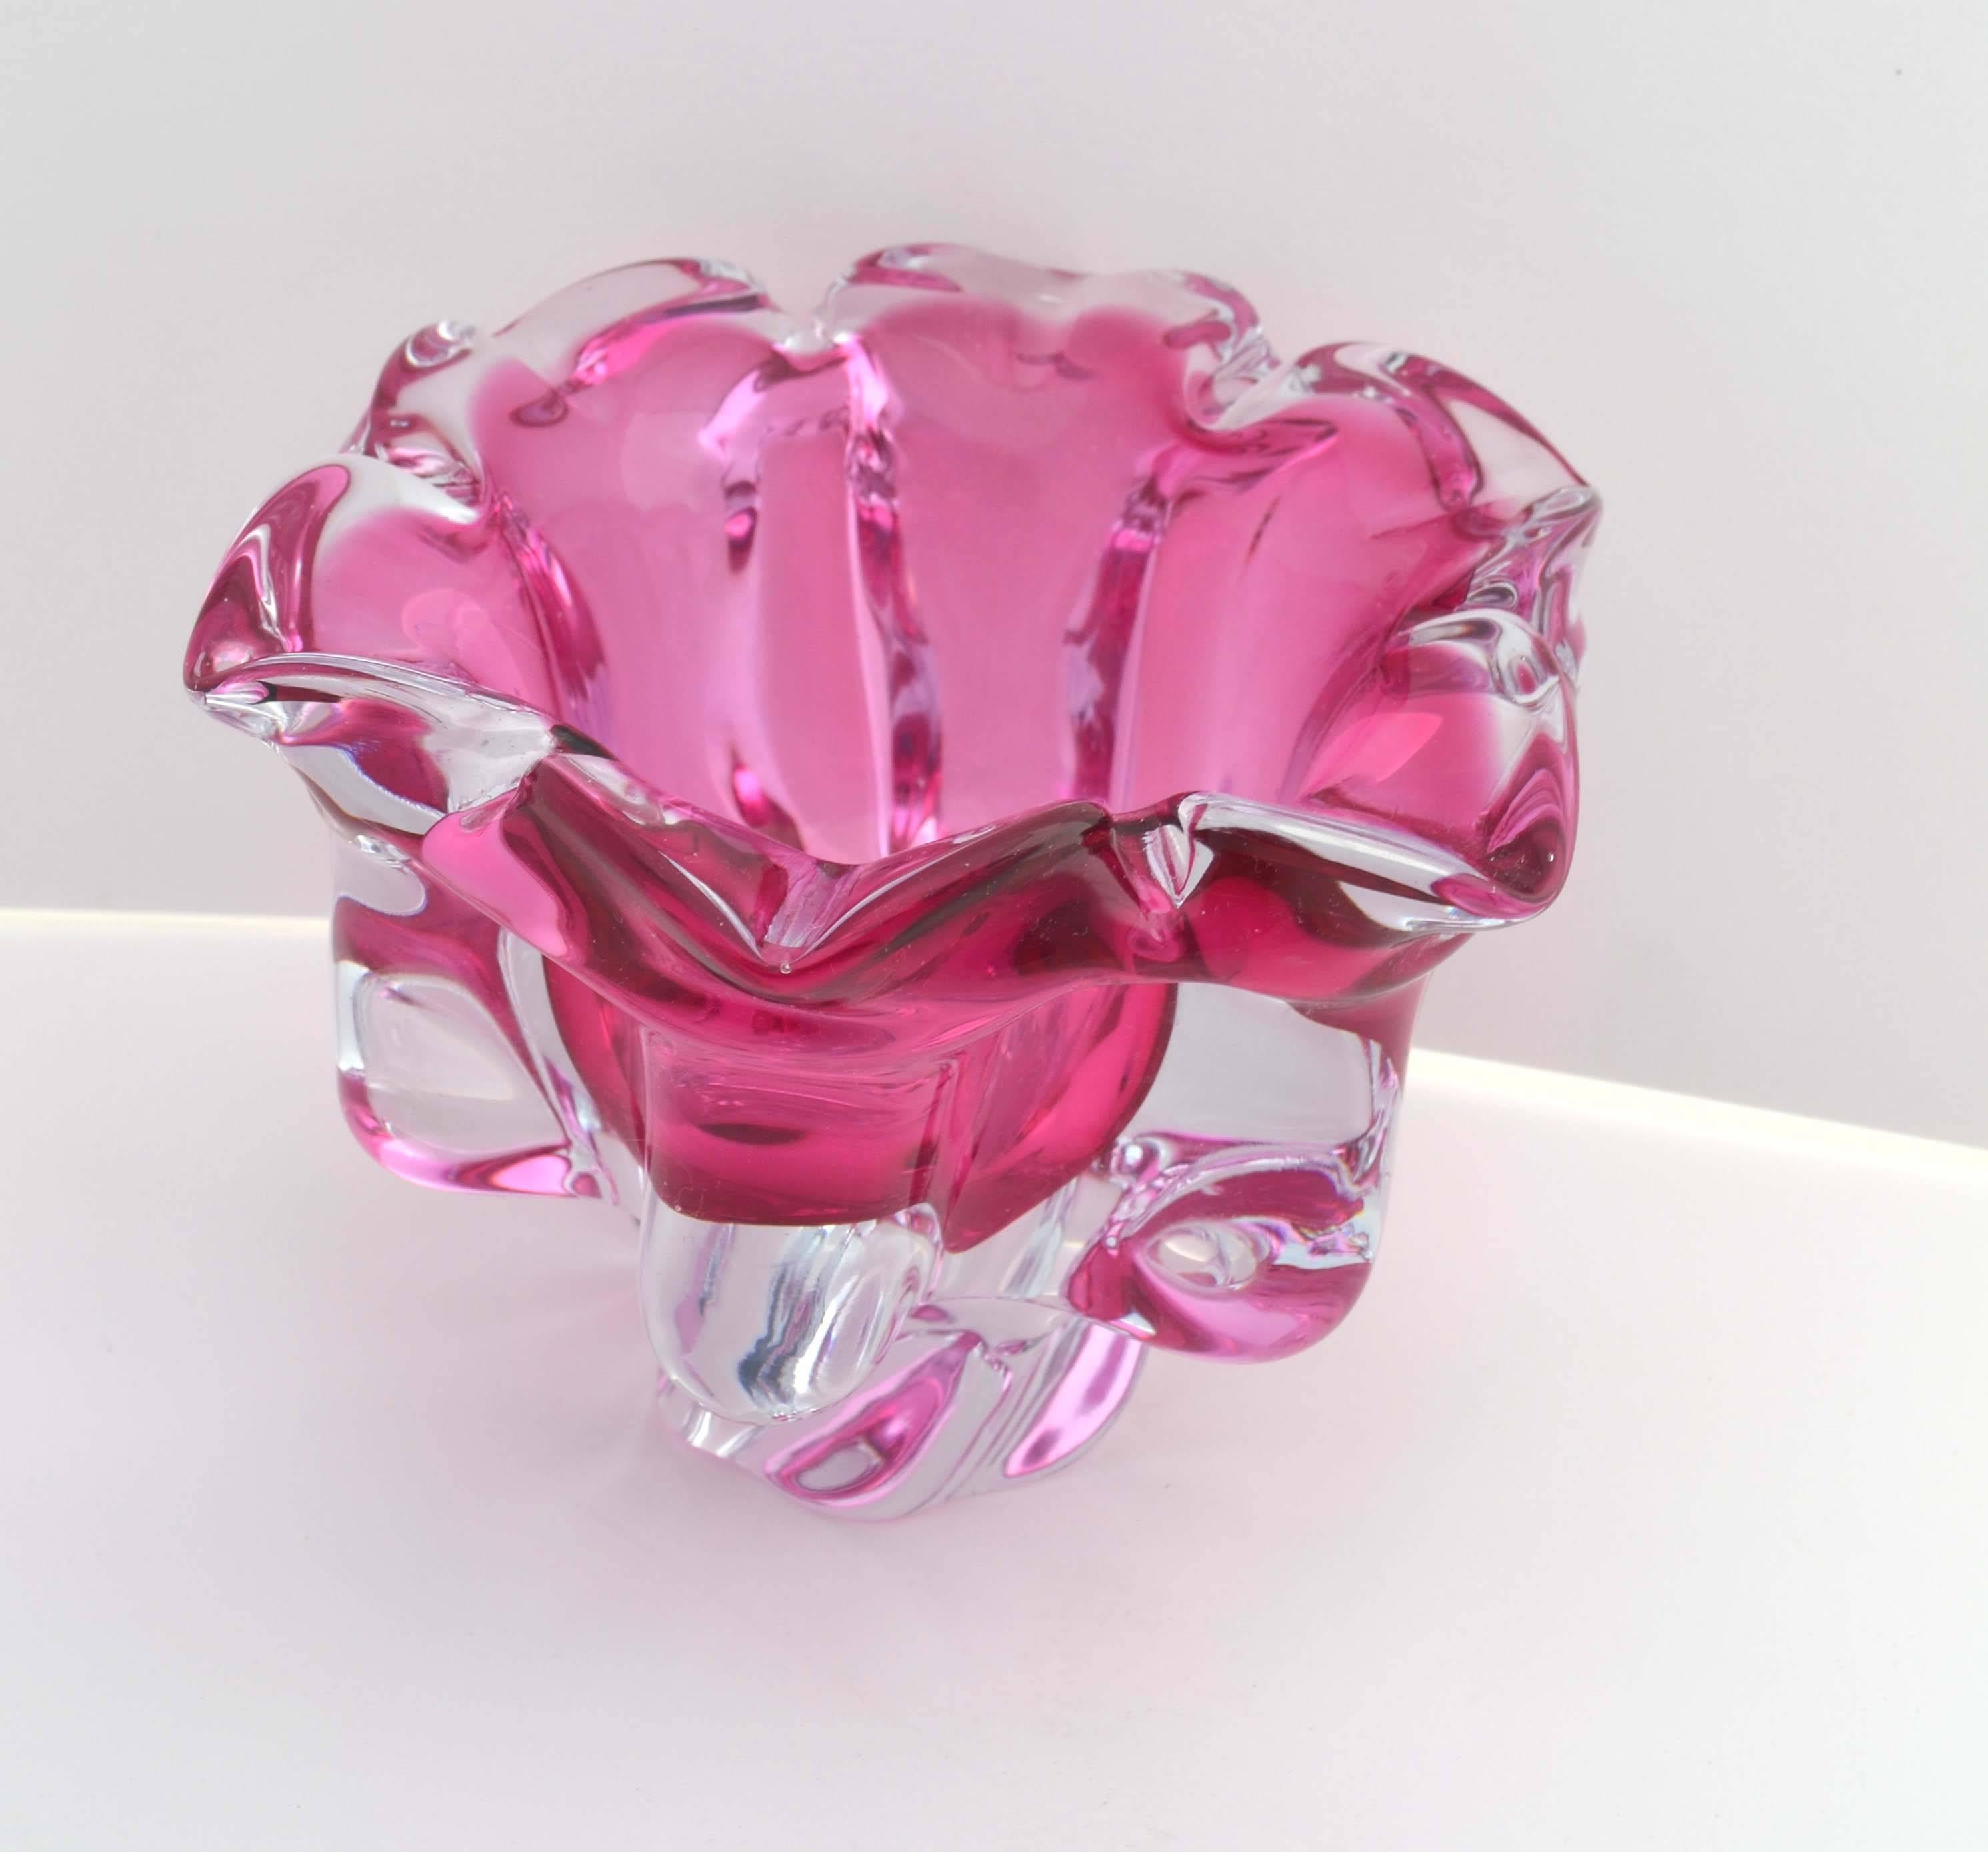 Sklo Union Chribska Glassworks, Bol à pied Sommerso Vintage Pink Cranberry

Superbe bol sur pied en forme d'étoile, datant du milieu du siècle dernier, en verre transparent et rose/canneberge, réalisé par Josef Hospodka (Tchécoslovaque, 1923-1989)